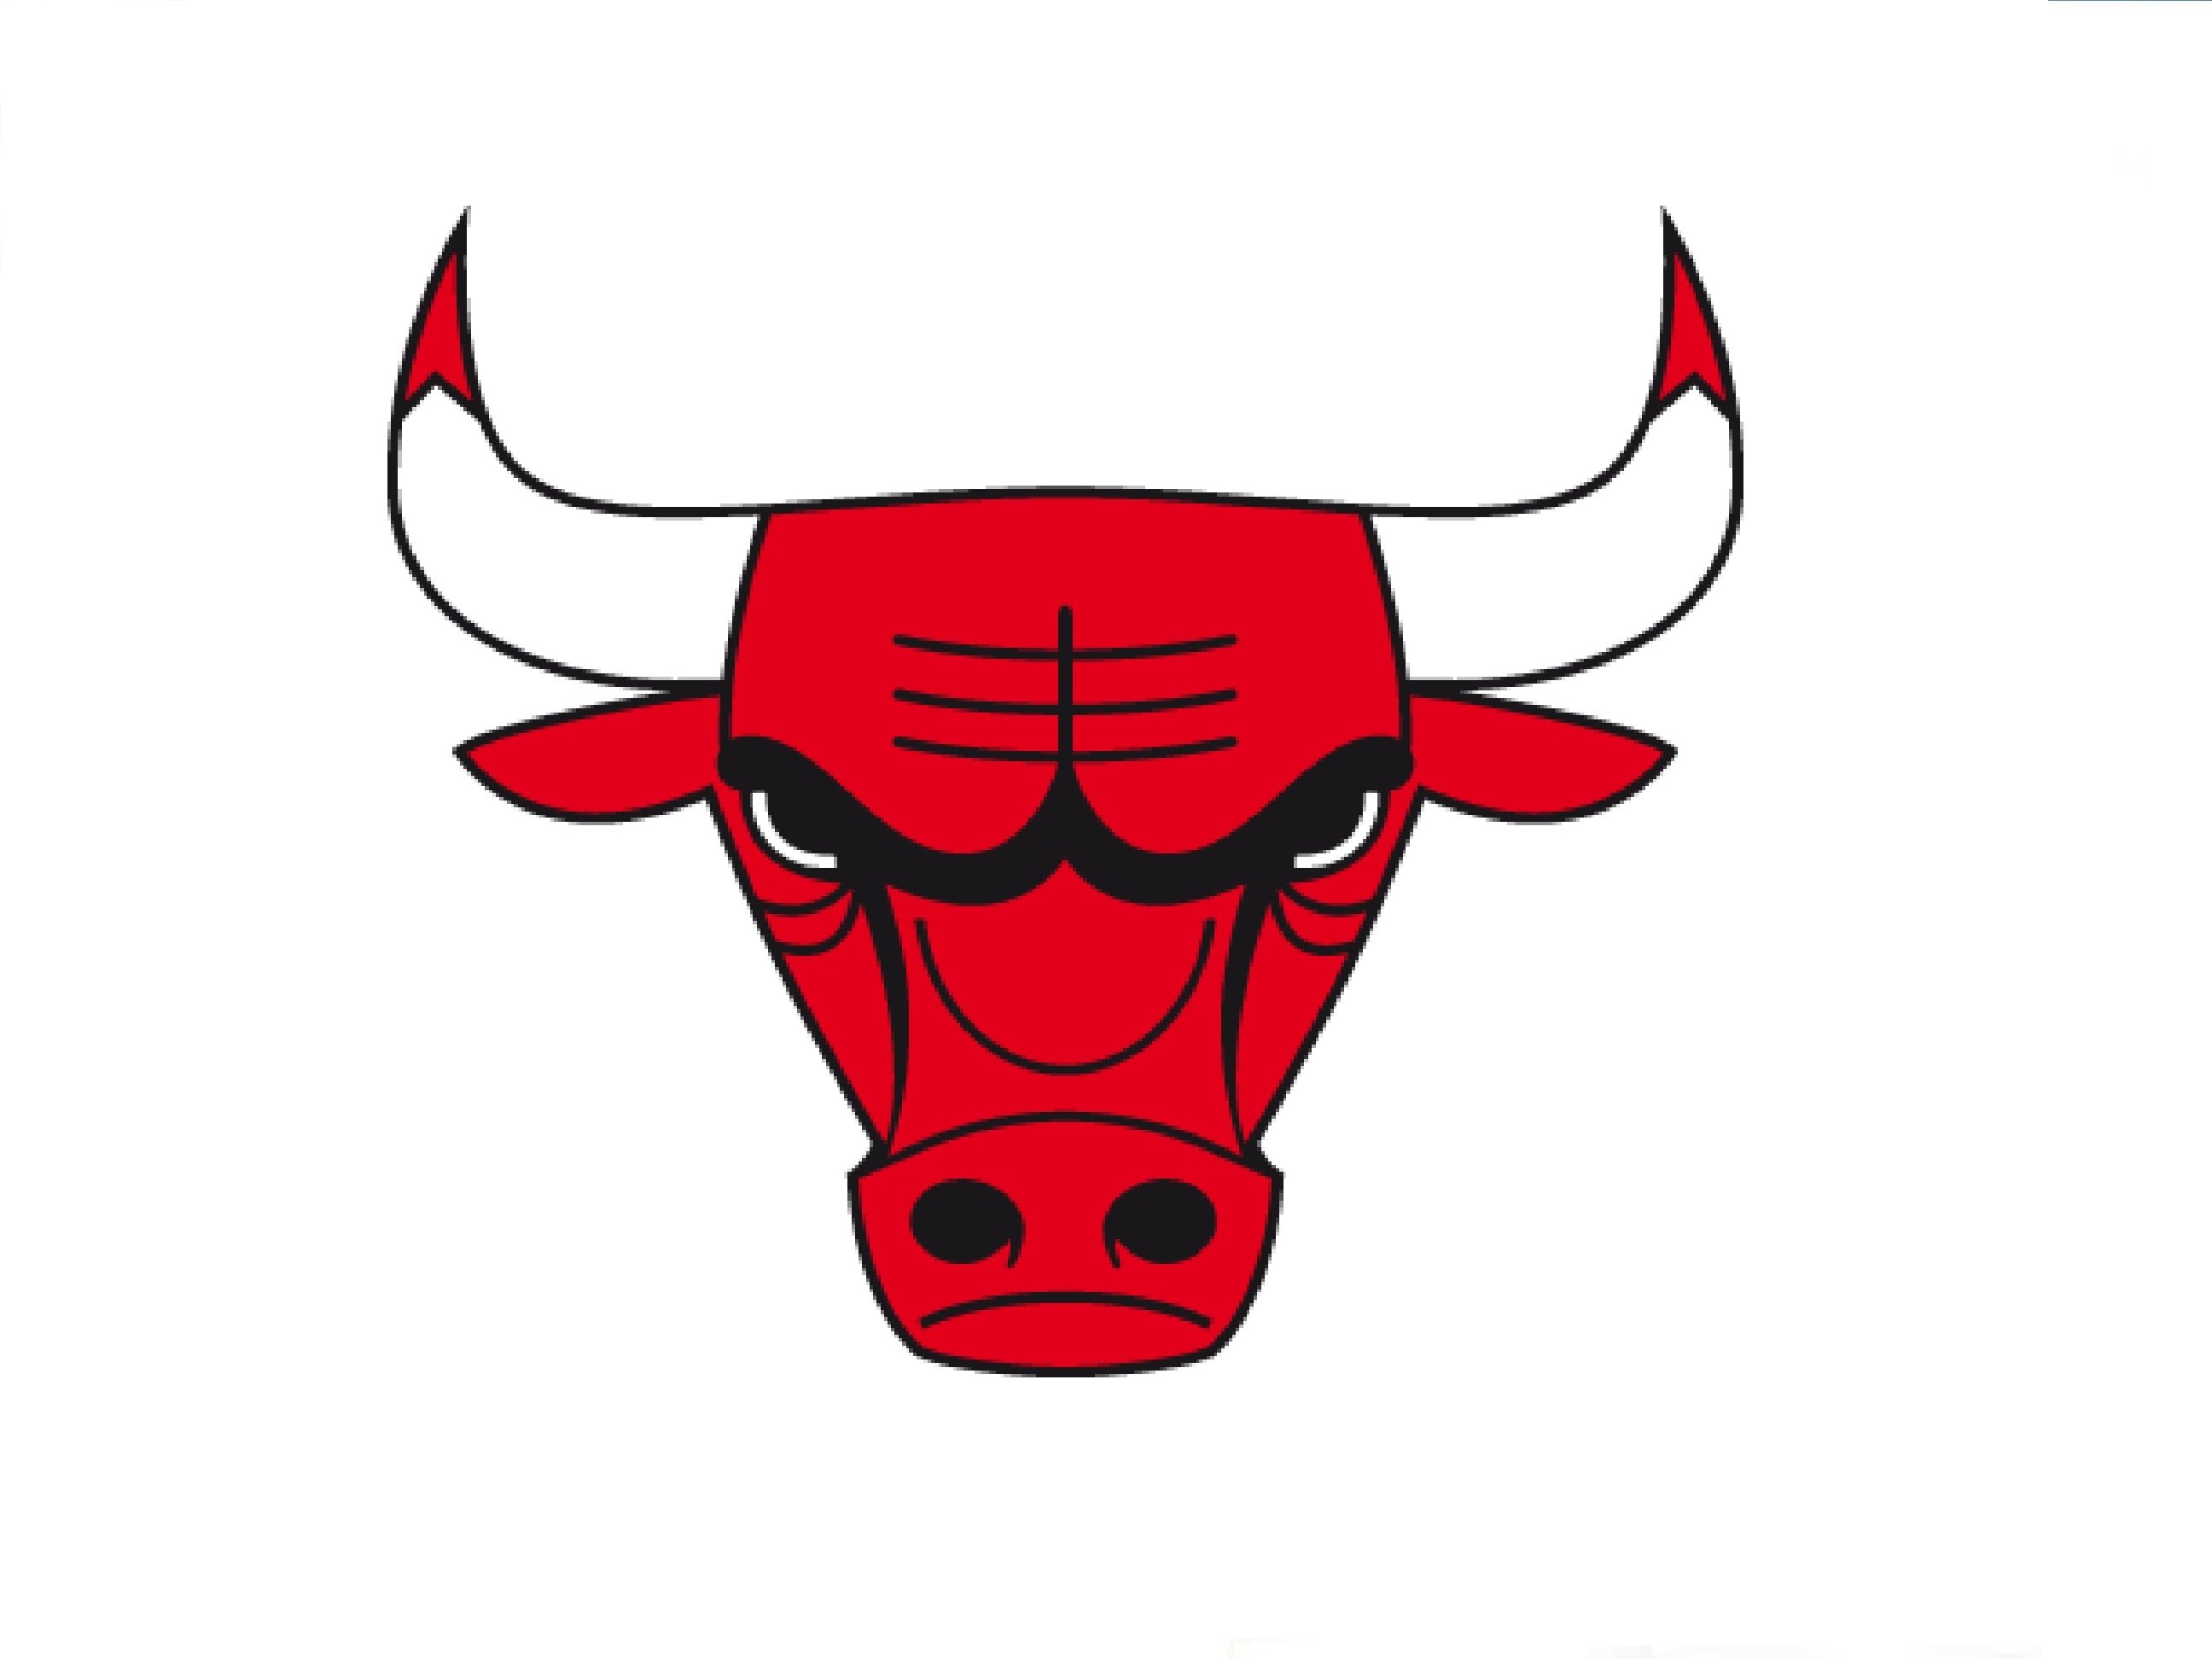 How to Draw a Chicago Bulls logo / Ð?Ð°Ðº Ð½Ð°Ñ?Ð¸ÑÐ¾Ð²Ð°Ñ?Ñ? Ð·Ð½Ð°Ðº Ð§Ð¸ÐºÐ°Ð³Ð¾ ...